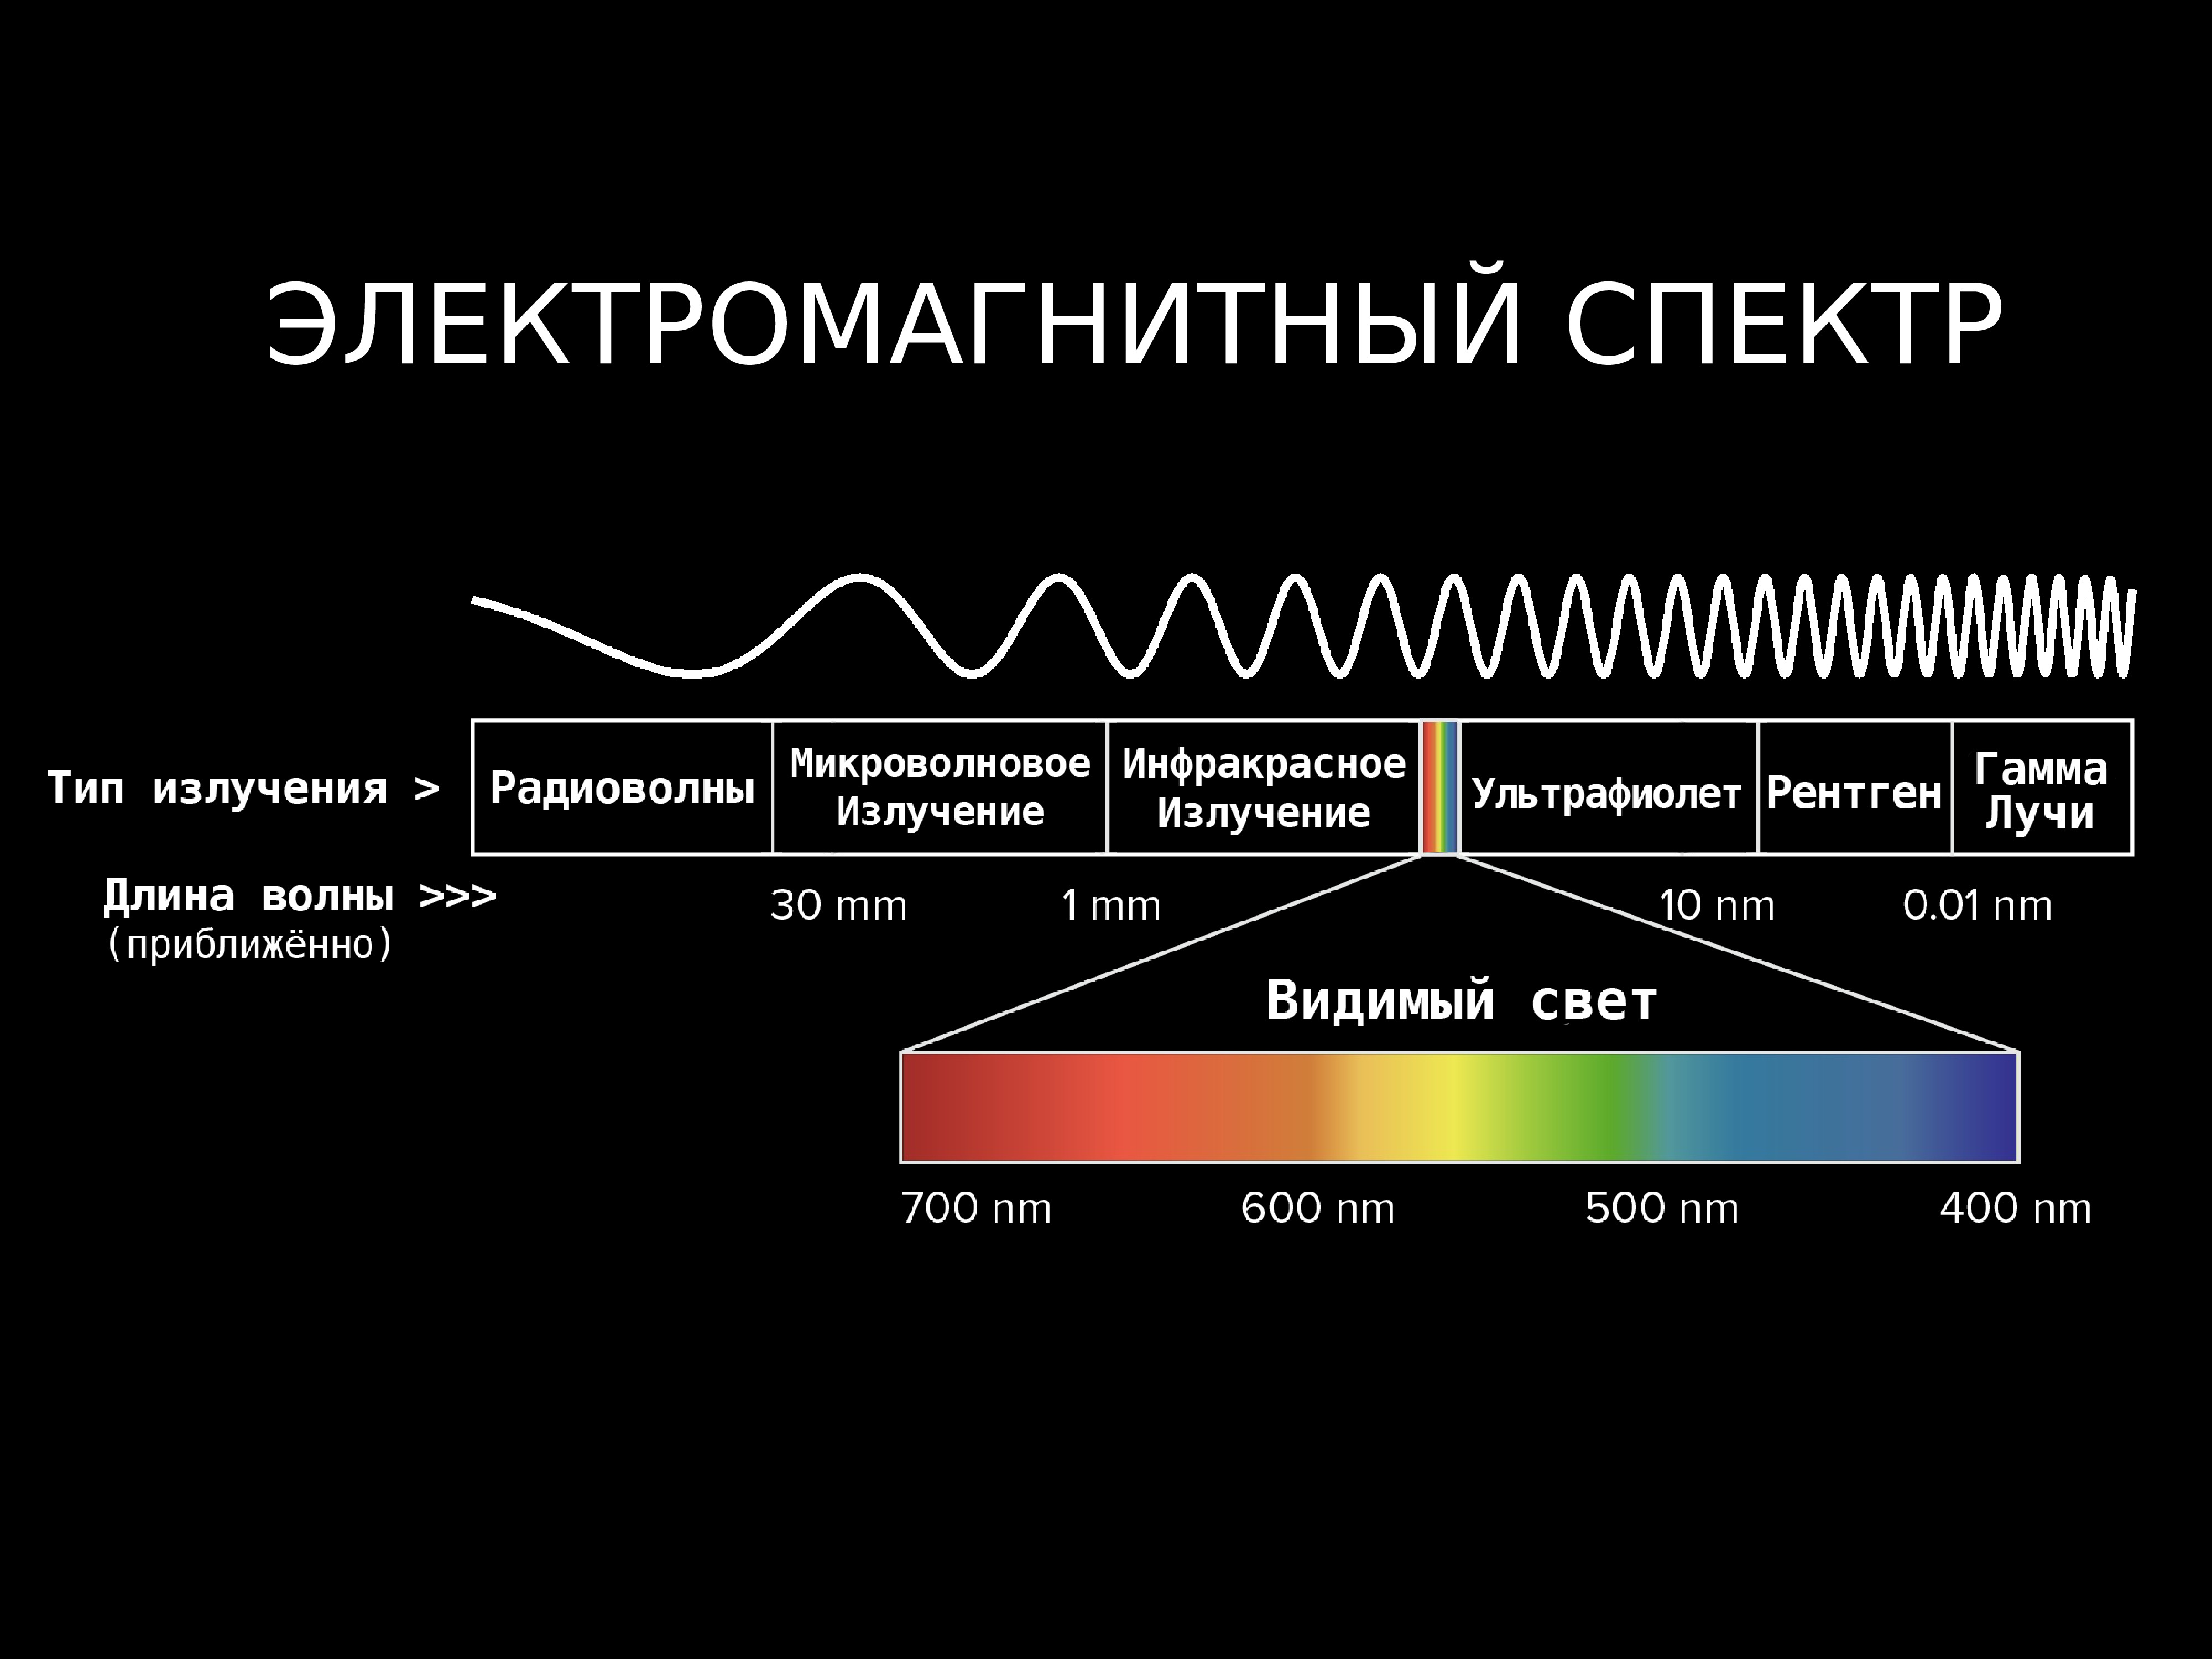 Наибольшую частоту волны имеет. Диапазоны спектра электромагнитного излучения. Электромагнитное излучение спектр электромагнитного излучения. Спектр длин волн электромагнитных излучений. Длина волны электромагнитного излучения.